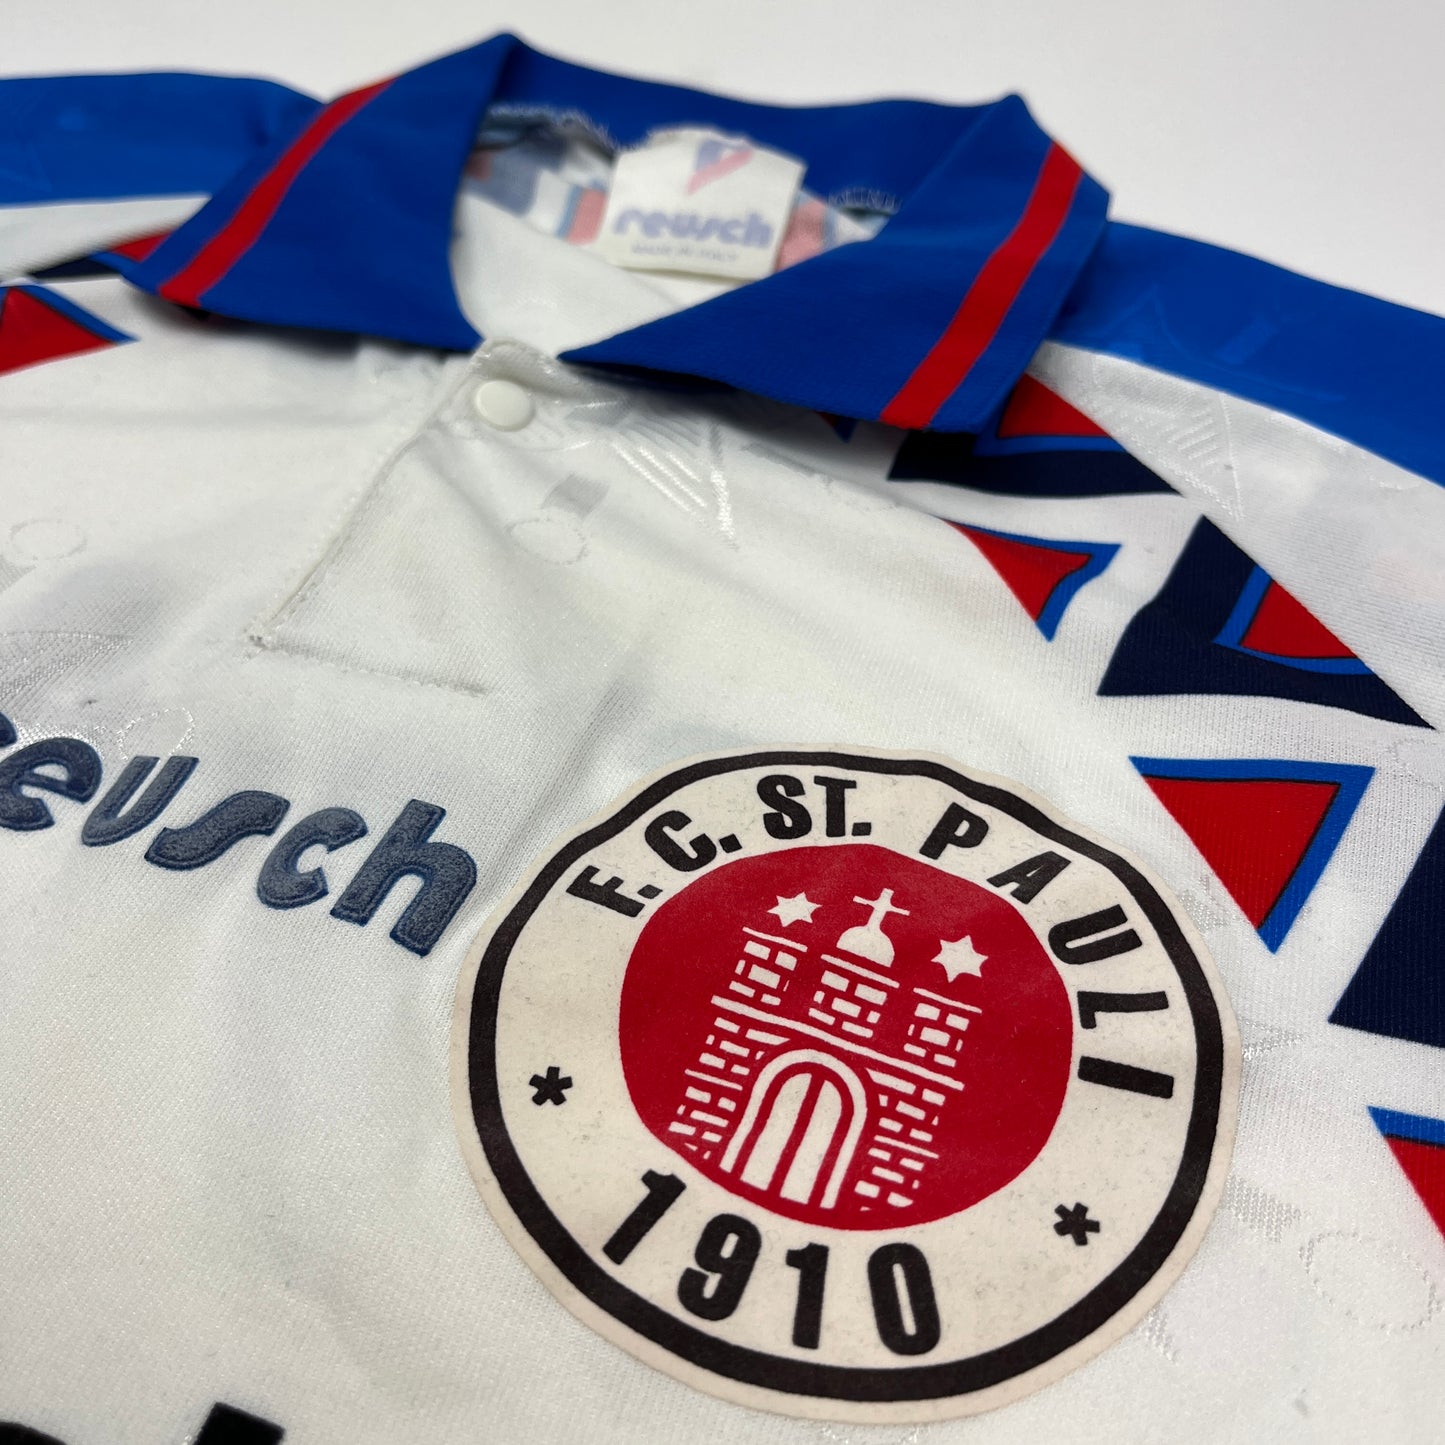 01222 Reusch FC St Pauli 94/95 Amateur Jersey